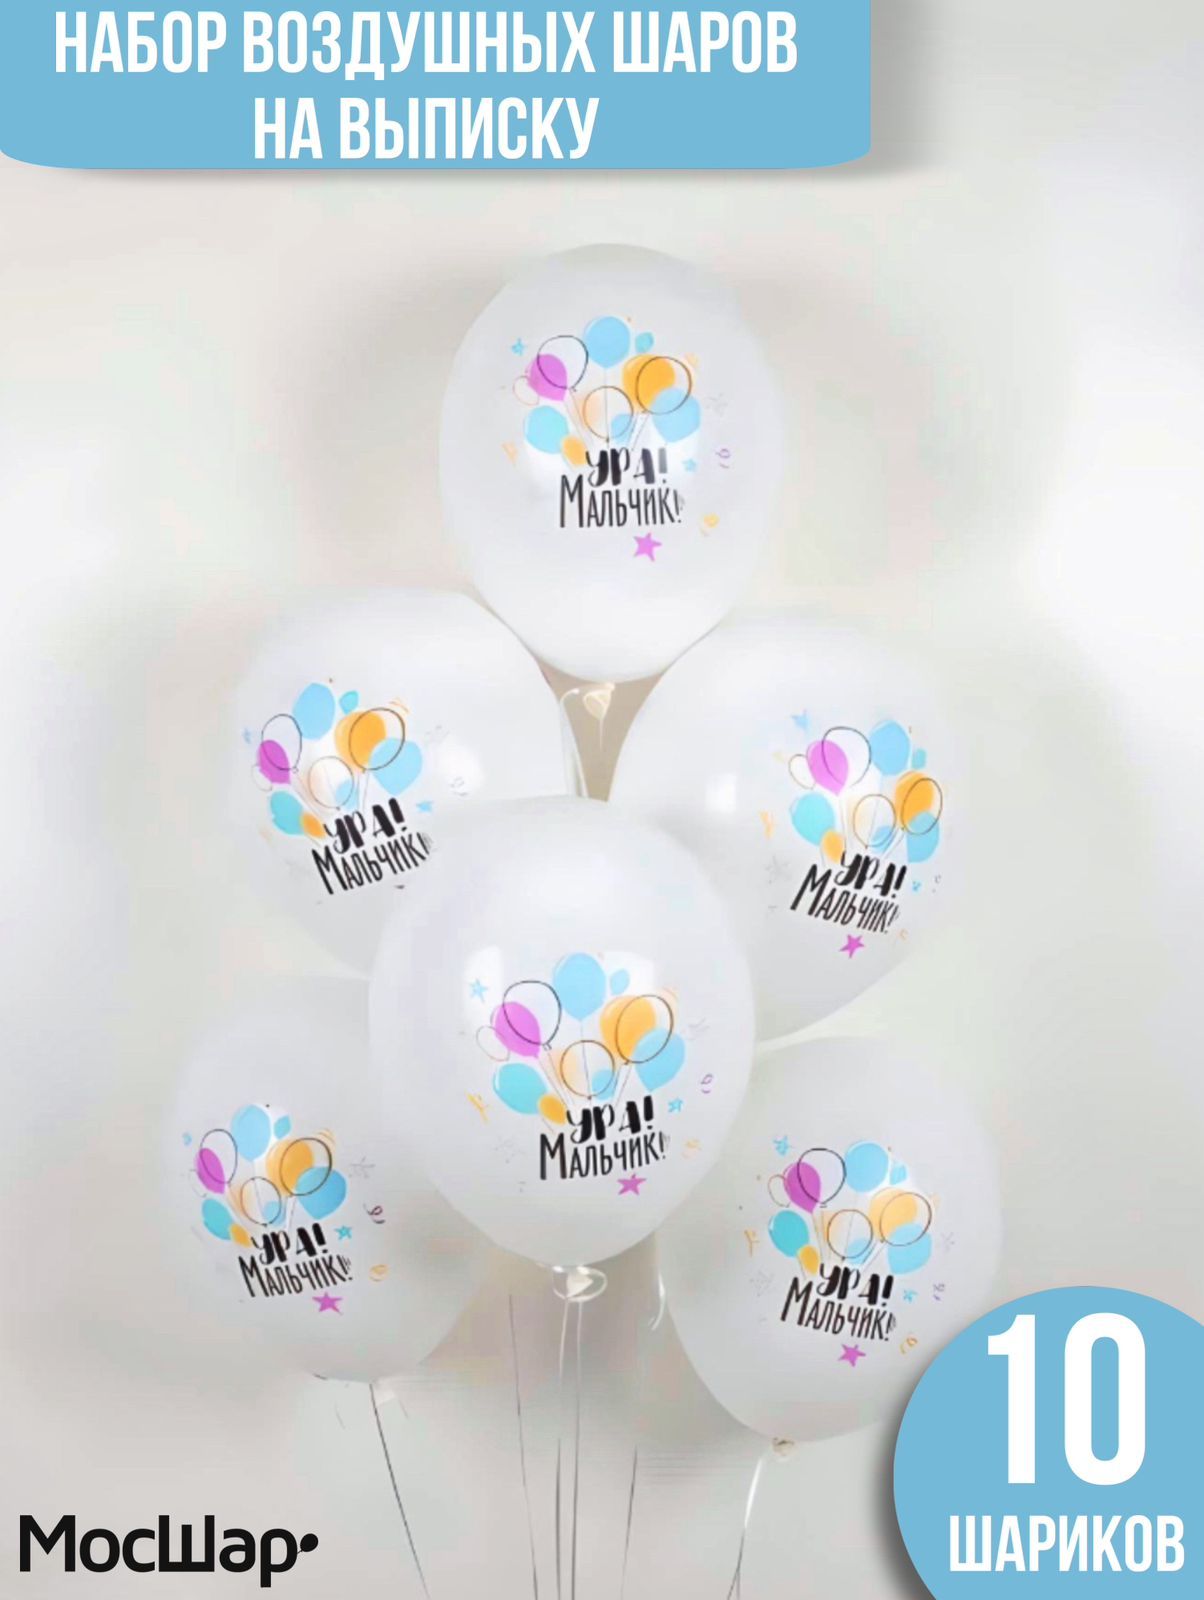 Воздушные шары Мосшар, на выписку для мальчика, белые, 10 шт путешествие на воздушных шариках